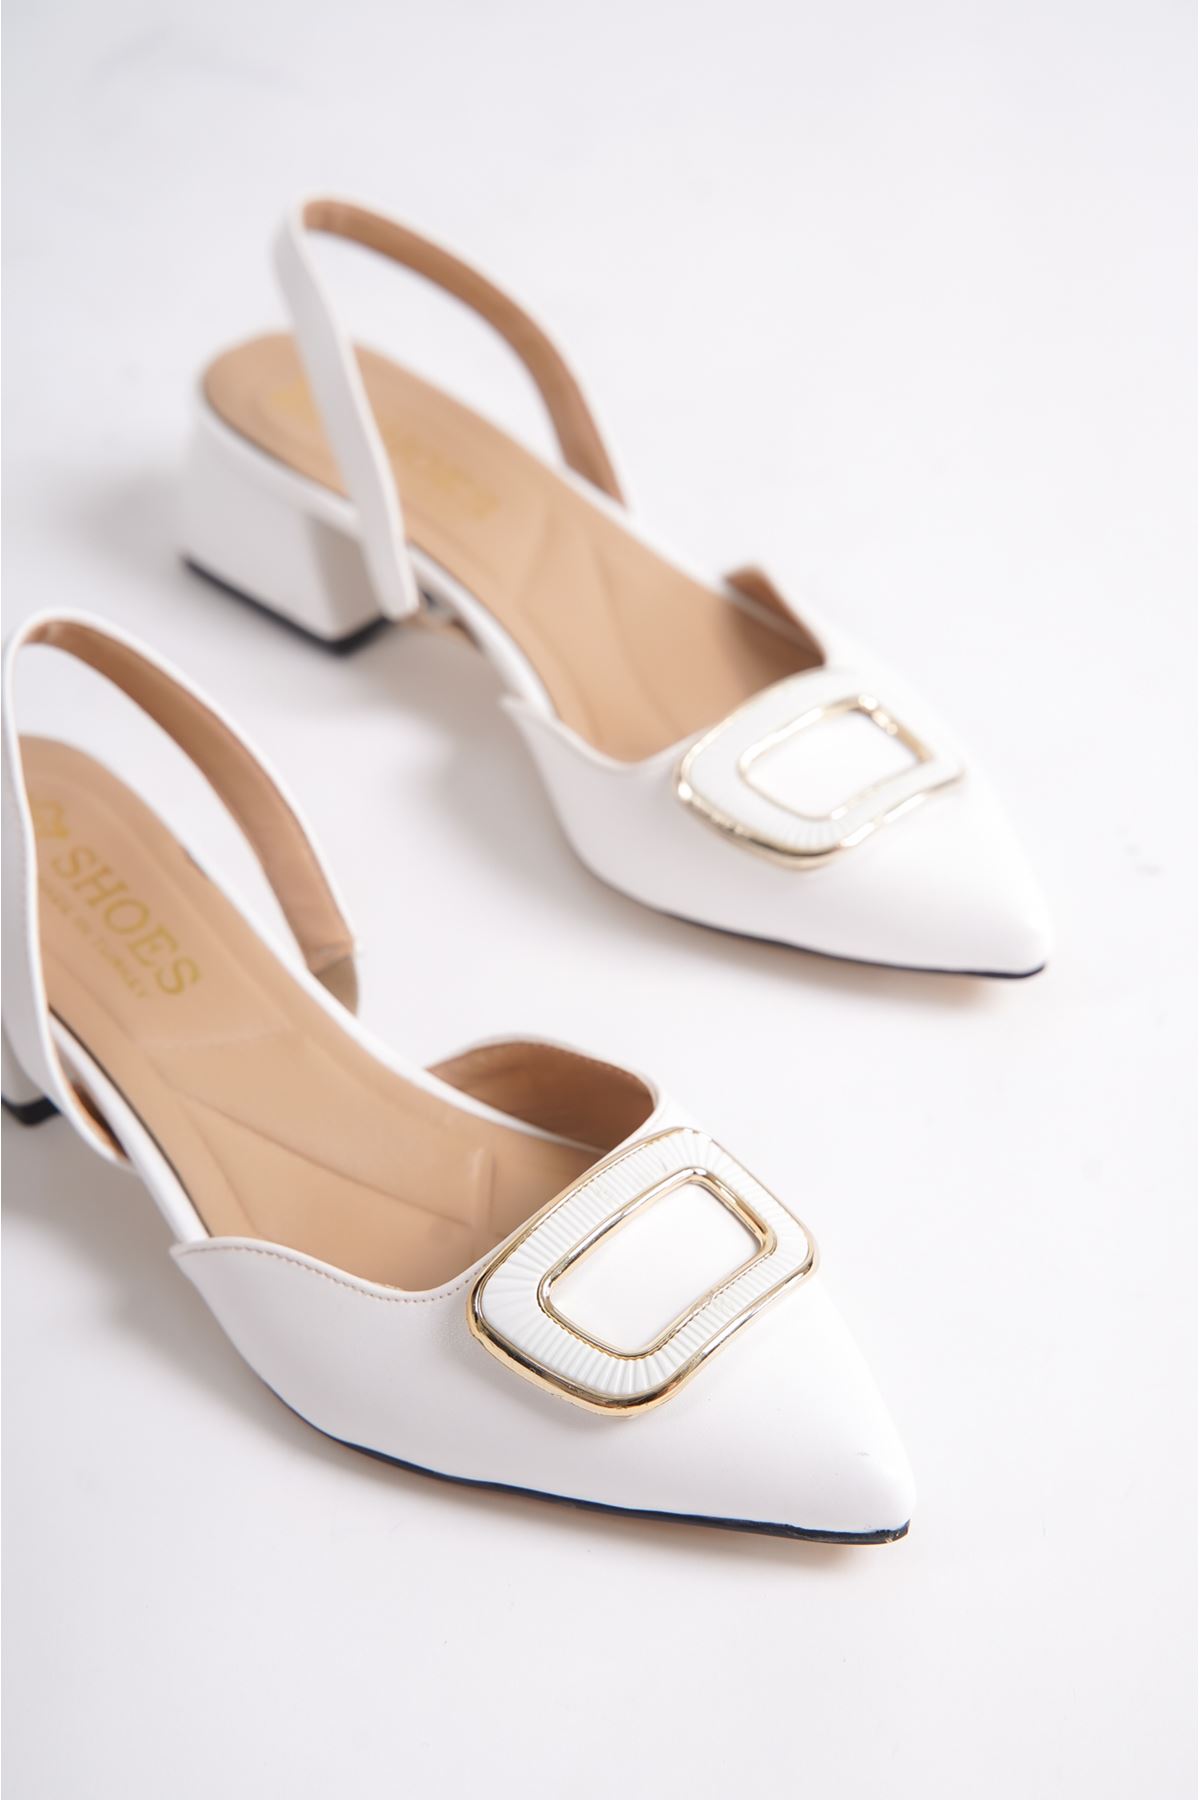 Lillian Beyaz Mat Deri Topuklu Kadın Ayakkabı 